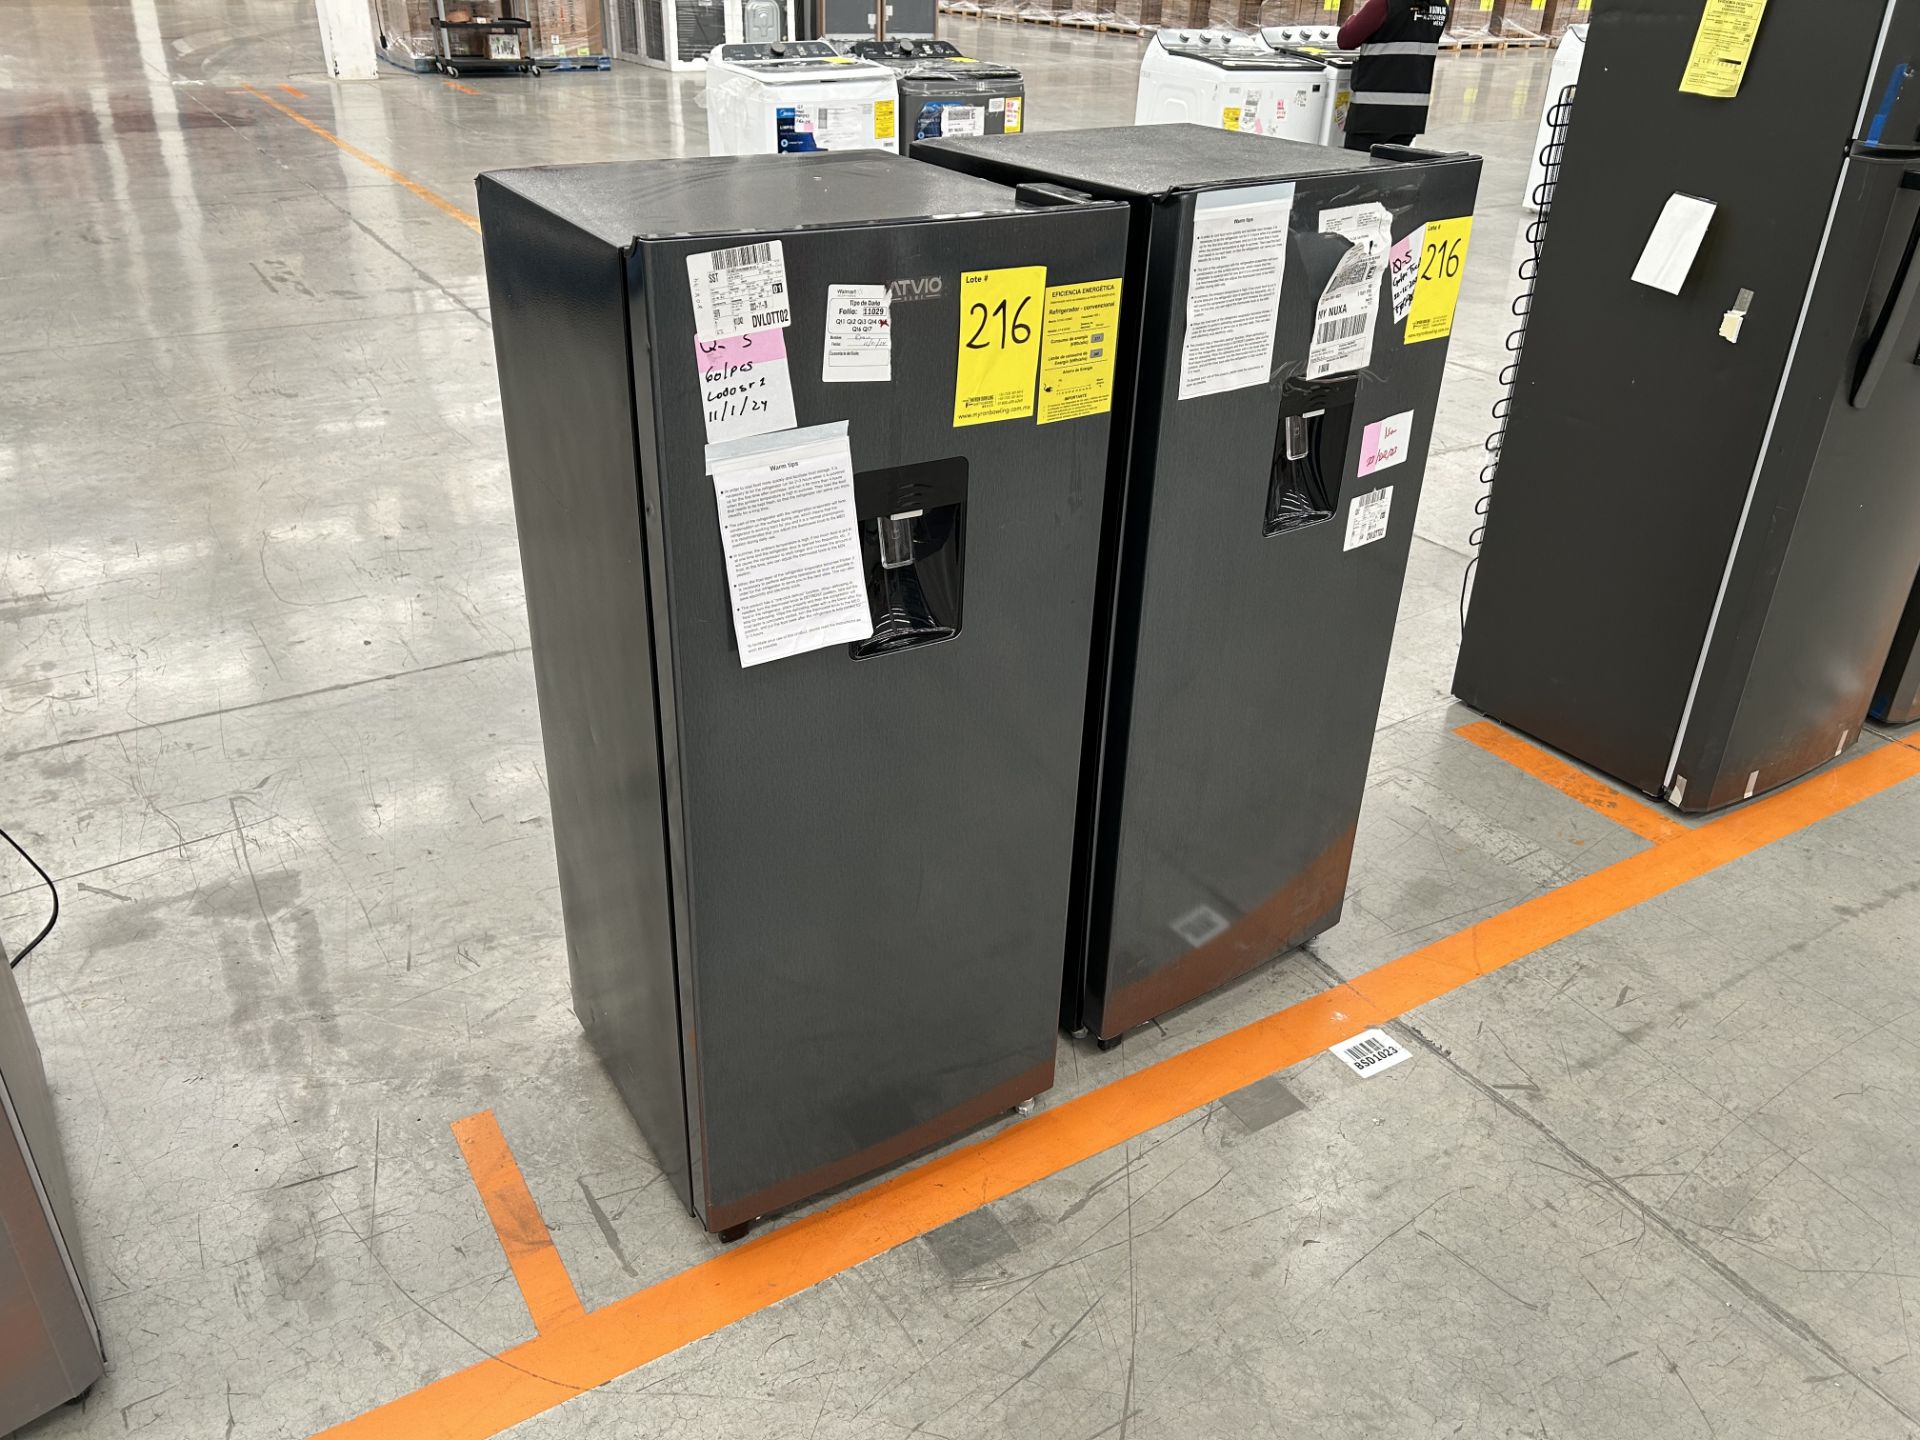 Lote de 2 Refrigeradores contiene: 1 Refrigerador con dispensador de agua Marca ATVIO, Modelo AT66U - Image 2 of 6